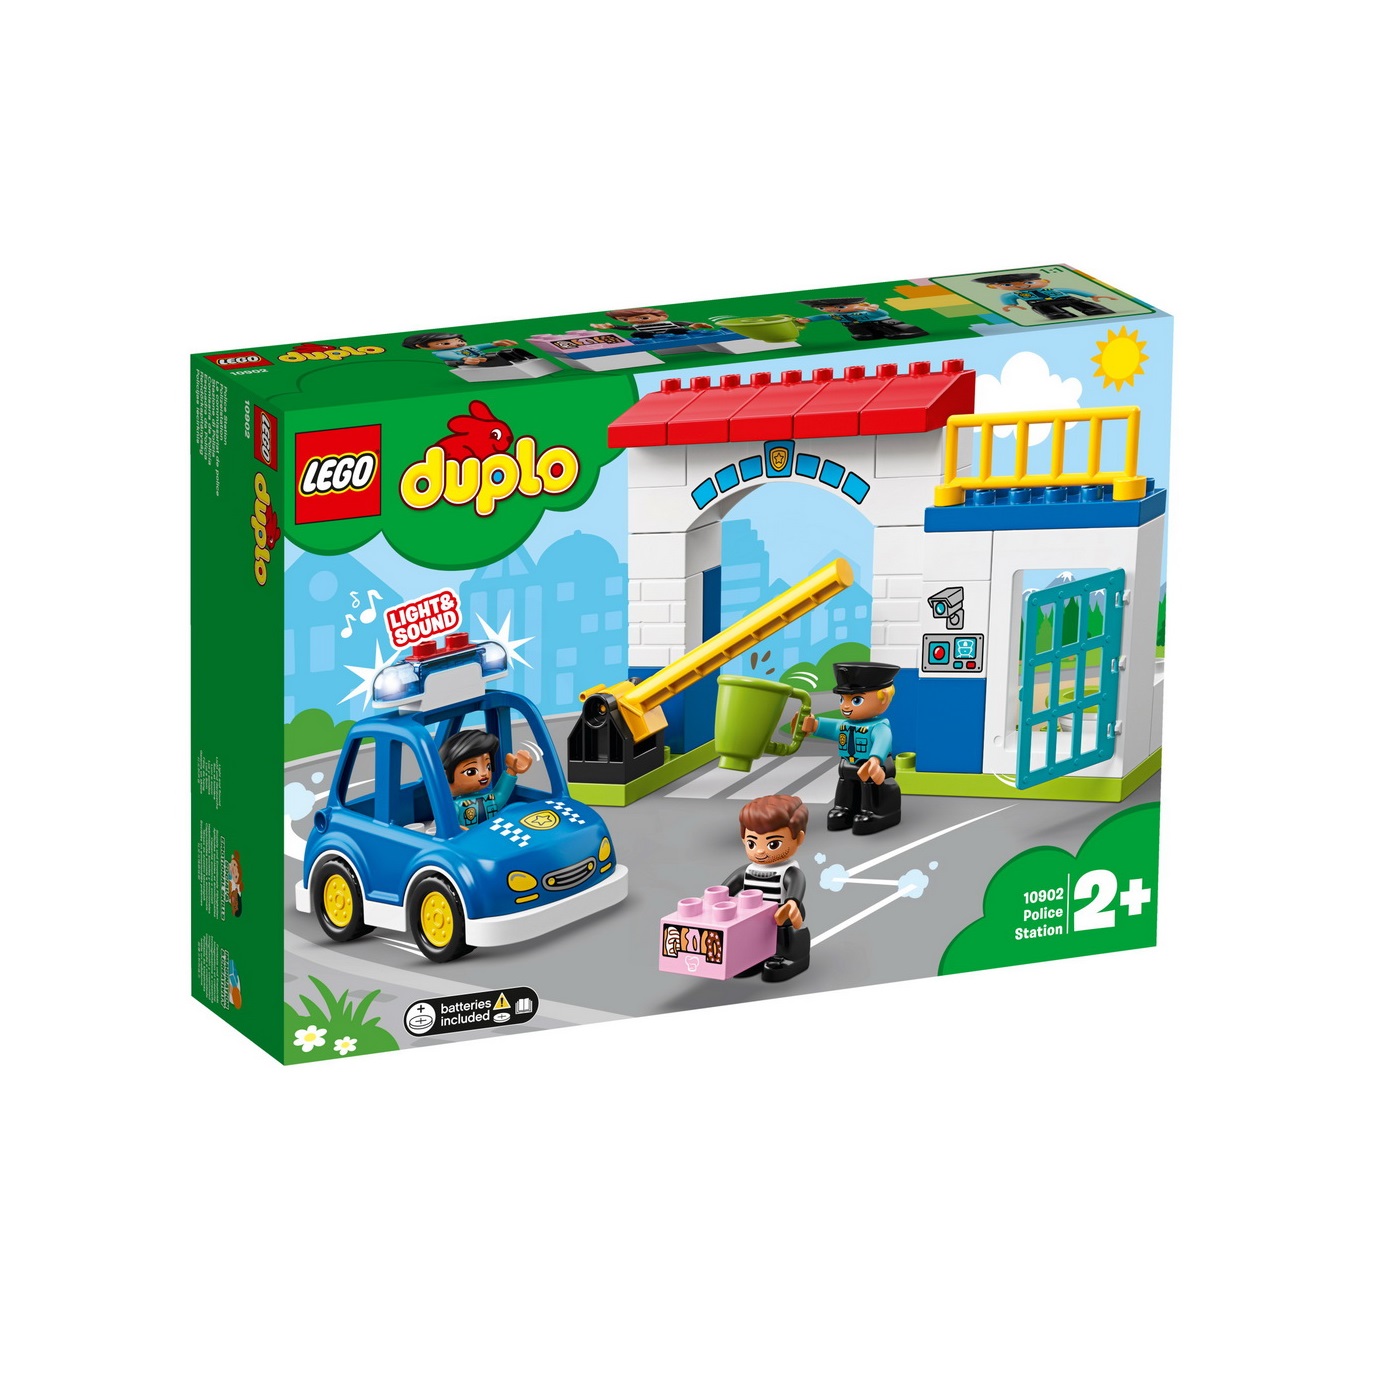 Sectie de politie, L10902, Lego